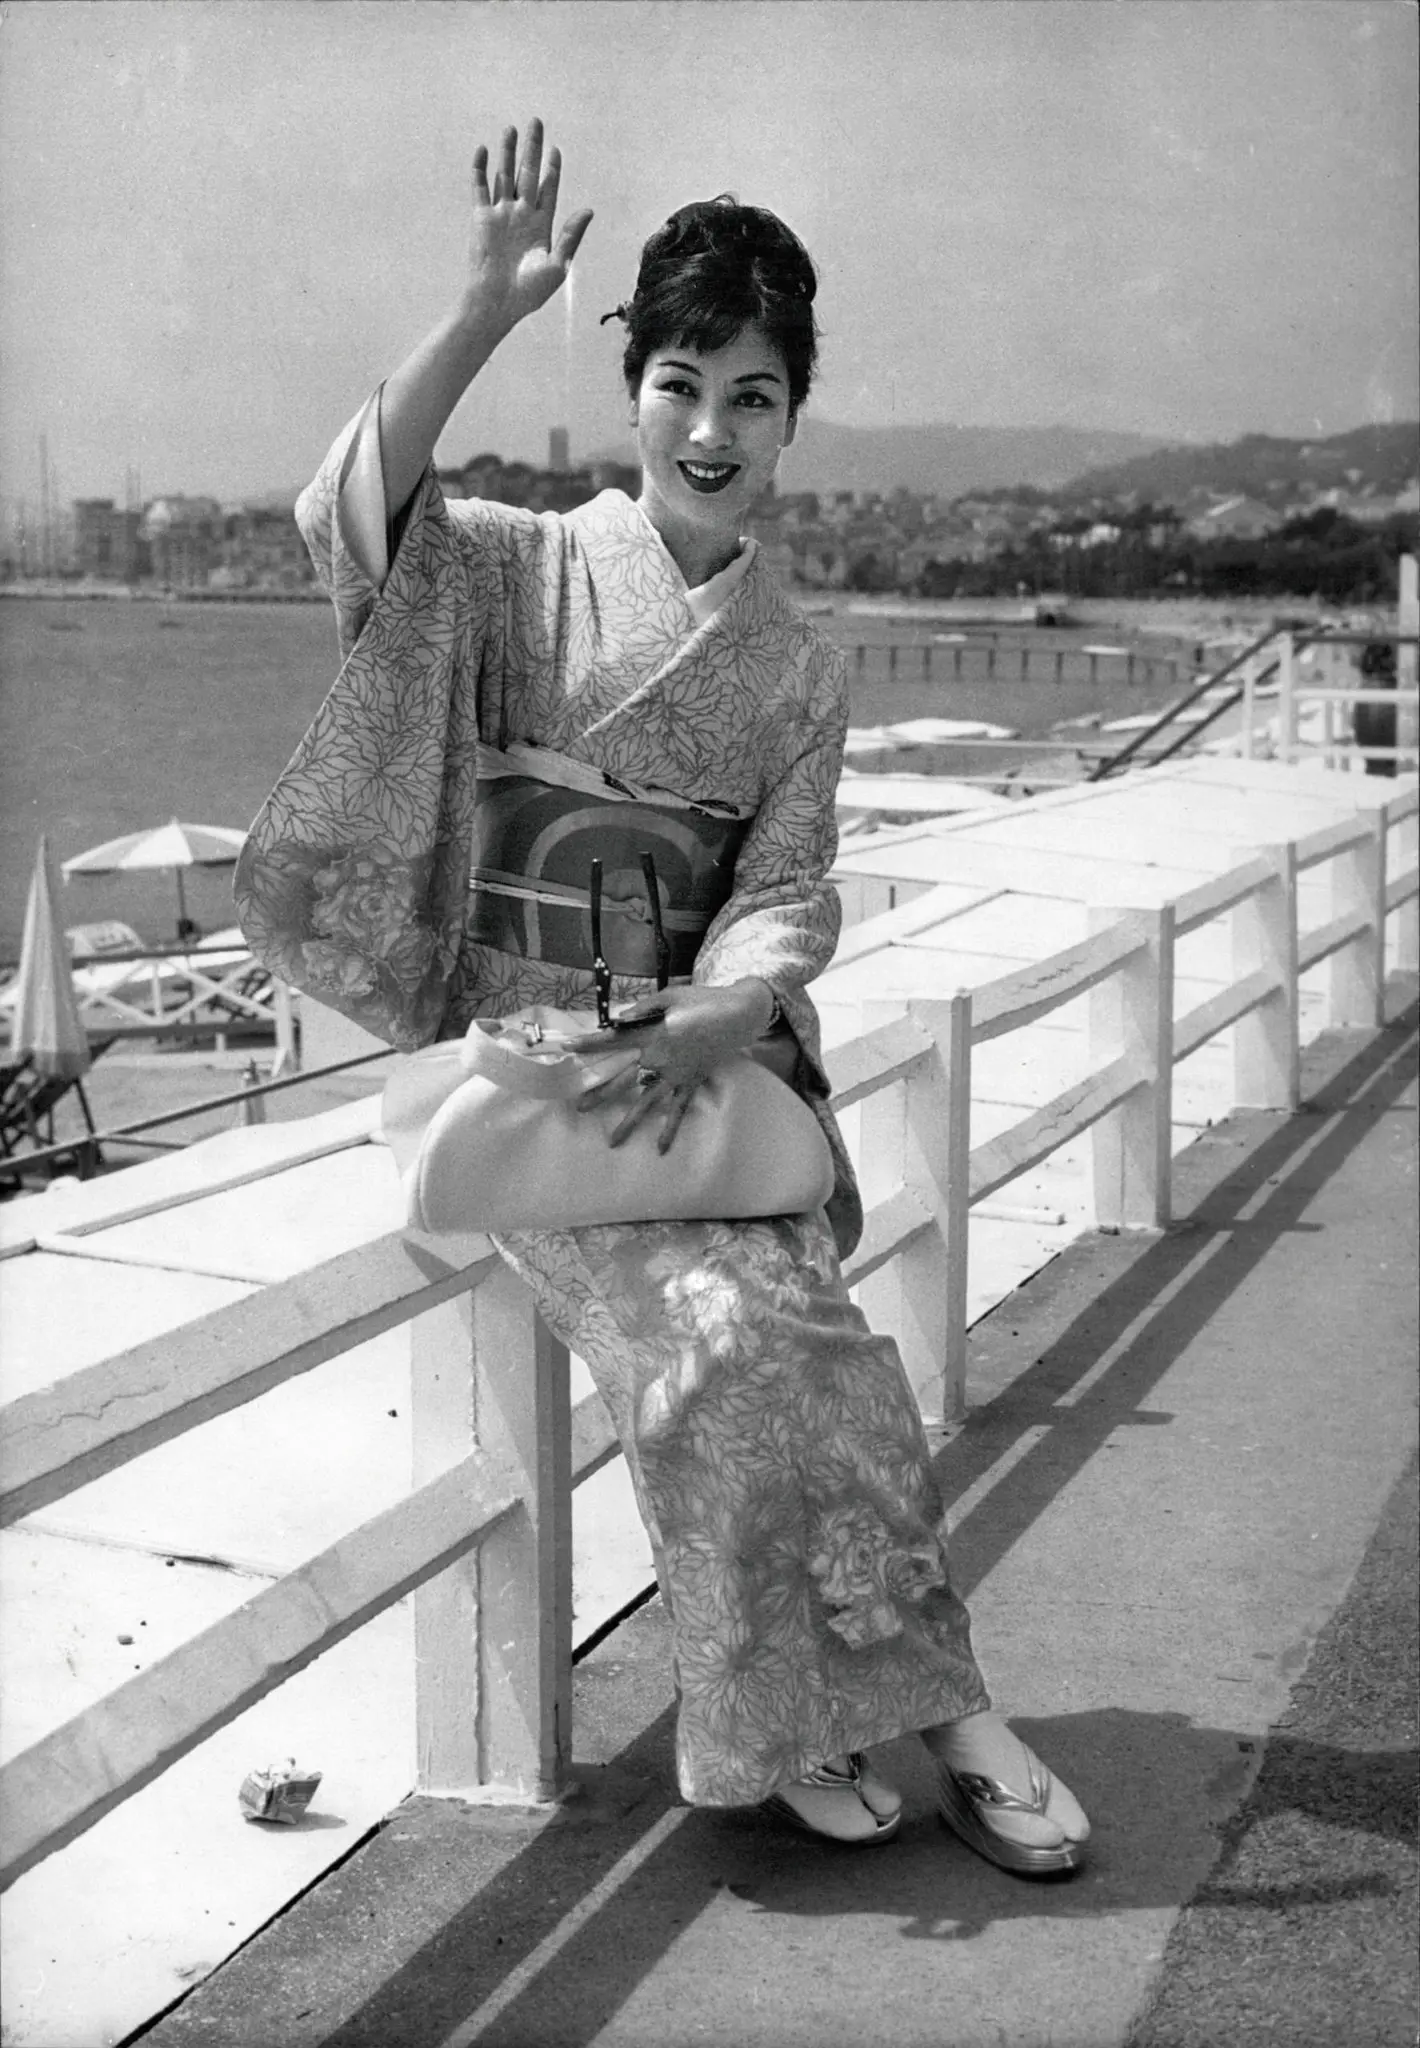 A atriz Machiko Kyo no Festival de Cinema de Cannes em 1960. Ela causou impacto internacional em 1950 em “Rashomon” de Akira Kurosawa e passou a trabalhar com outros importantes cineastas japoneses.Crédito...Keystone Pictures EUA/ZUMA Press, via Alamy